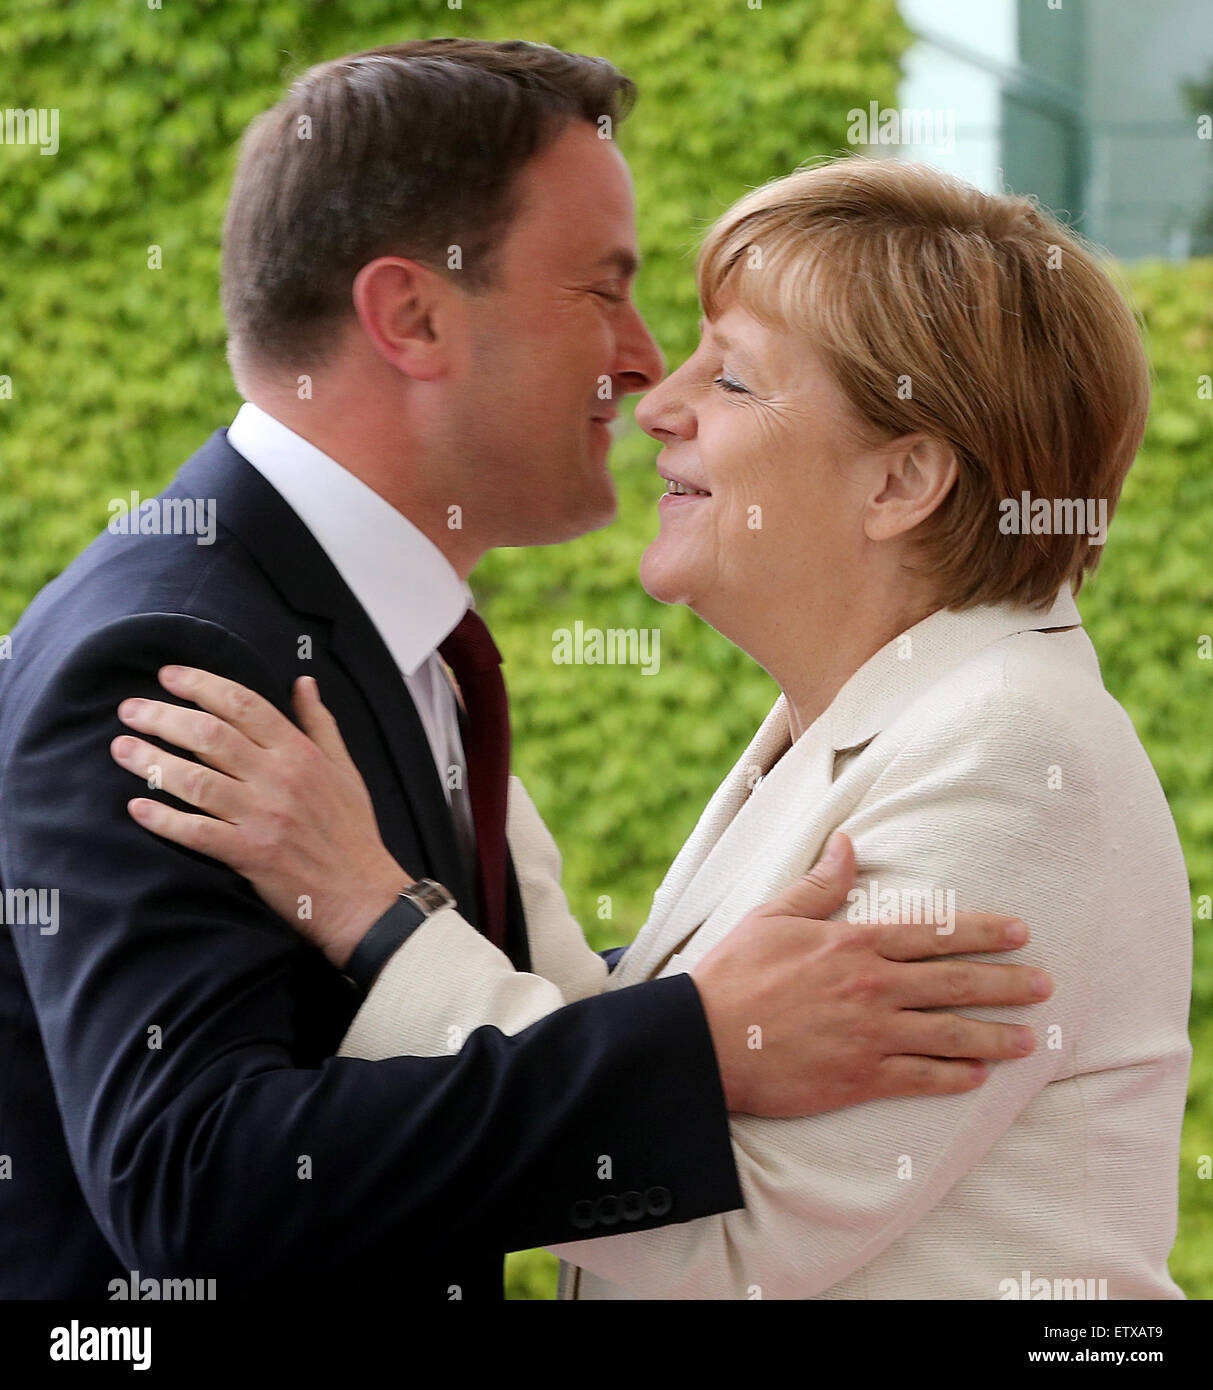 Berlino, Germania. 16 Giugno, 2015. Il cancelliere tedesco Angela Merkel riceve il primo ministro del Lussemburgo Xavier Bettel presso la cancelleria federale a Berlino, Germania, 16 giugno 2015. Foto: WOLFGANG KUMM/dpa/Alamy Live News Foto Stock